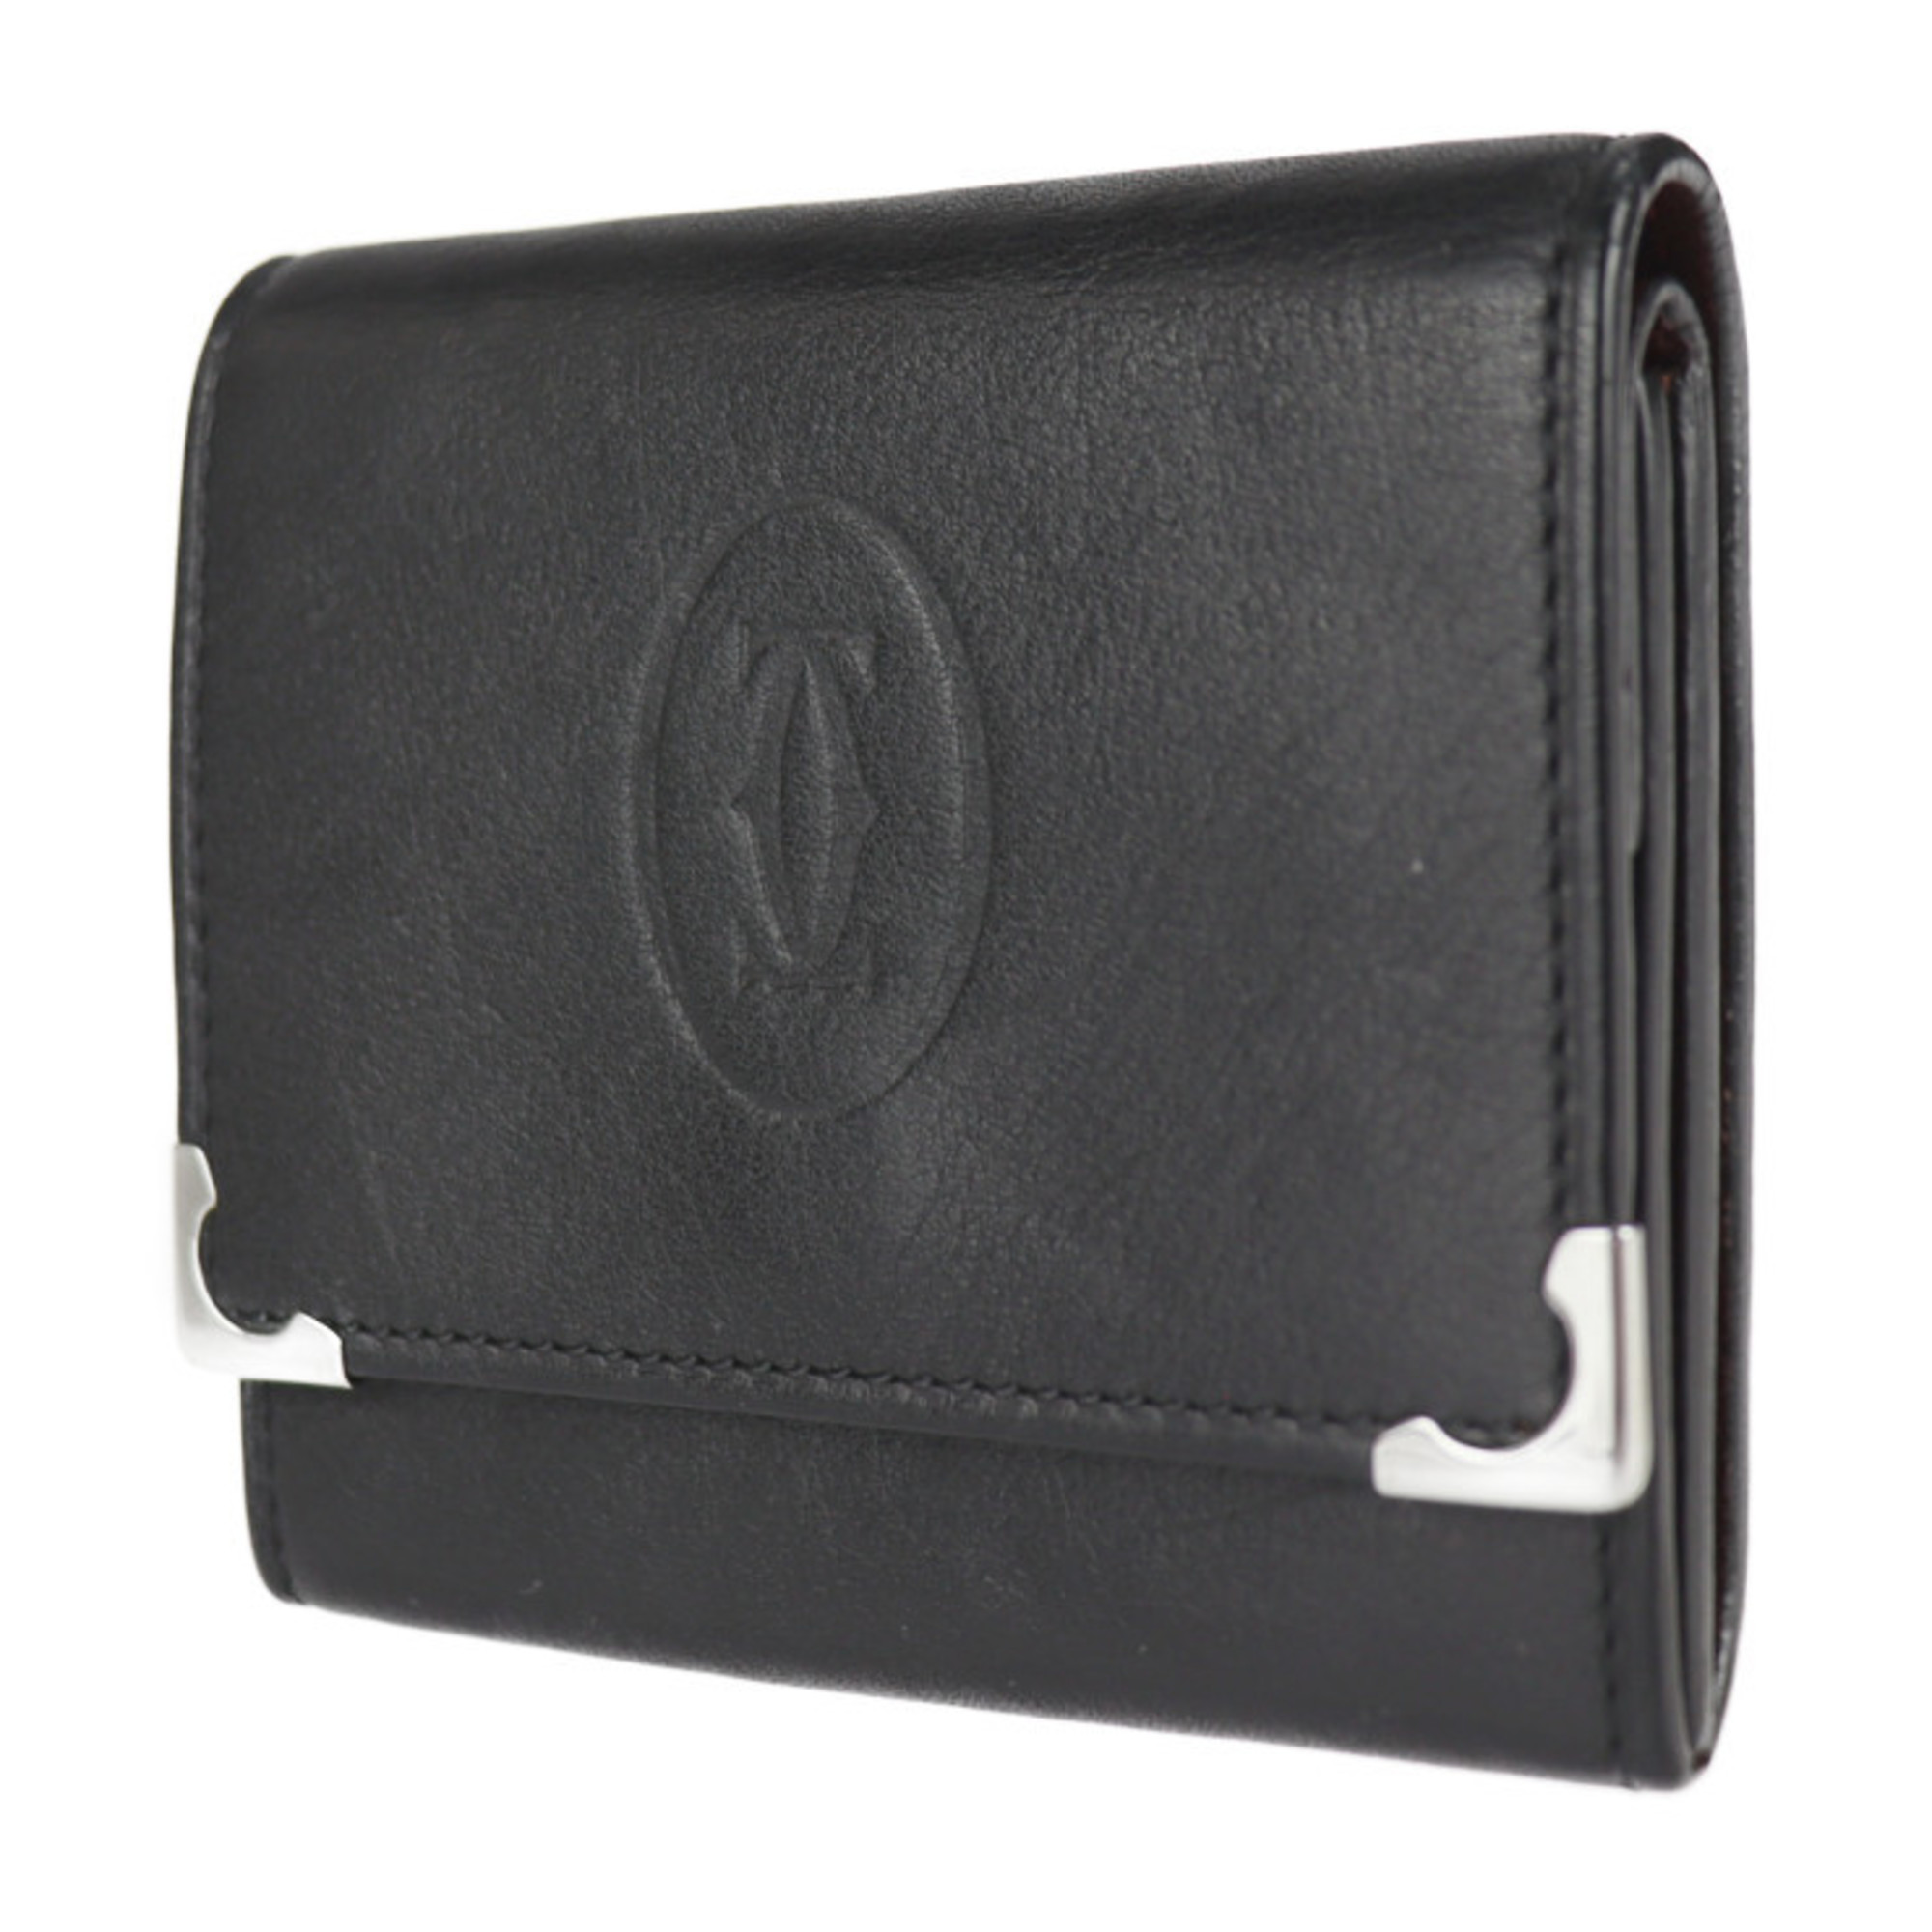 CARTIER Cartier 2C logo must de cabochon coin case L3000571 leather black purse bicolor